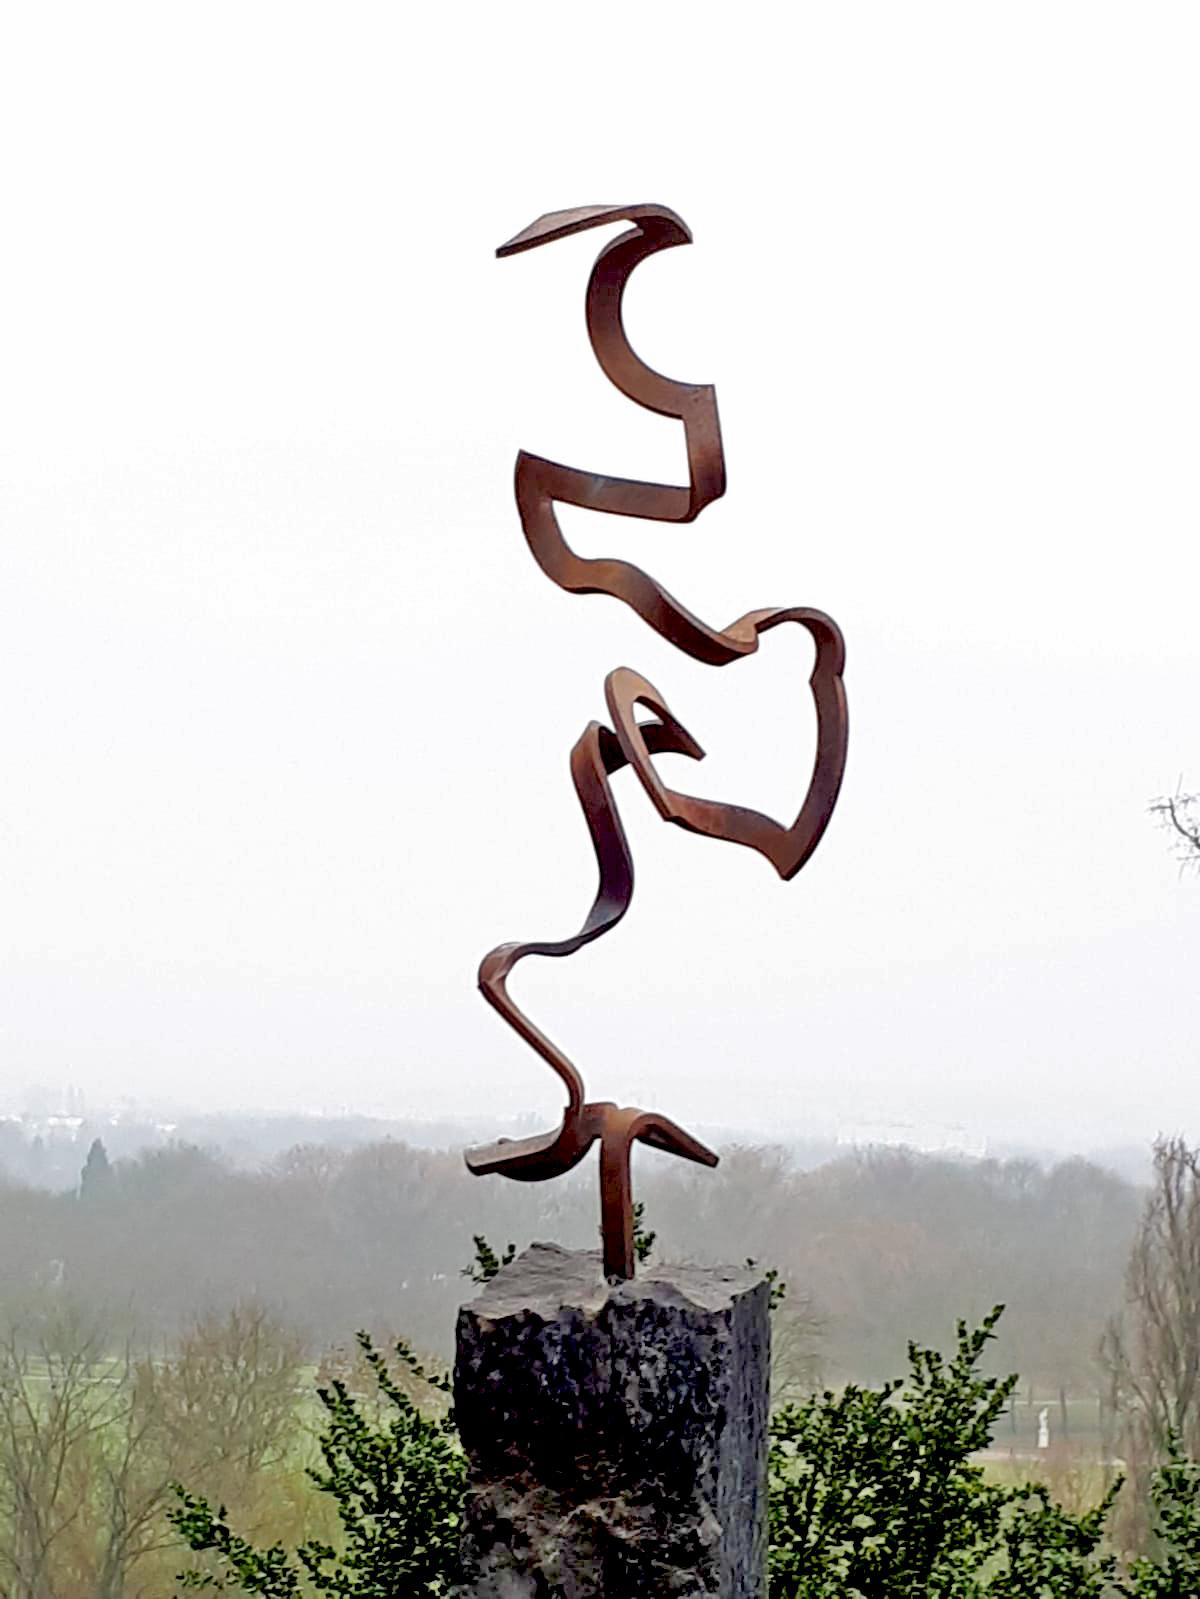 Steel Dance by Kuno Vollet Contemporary Steel Sculpture for indoor or outdoor For Sale 2